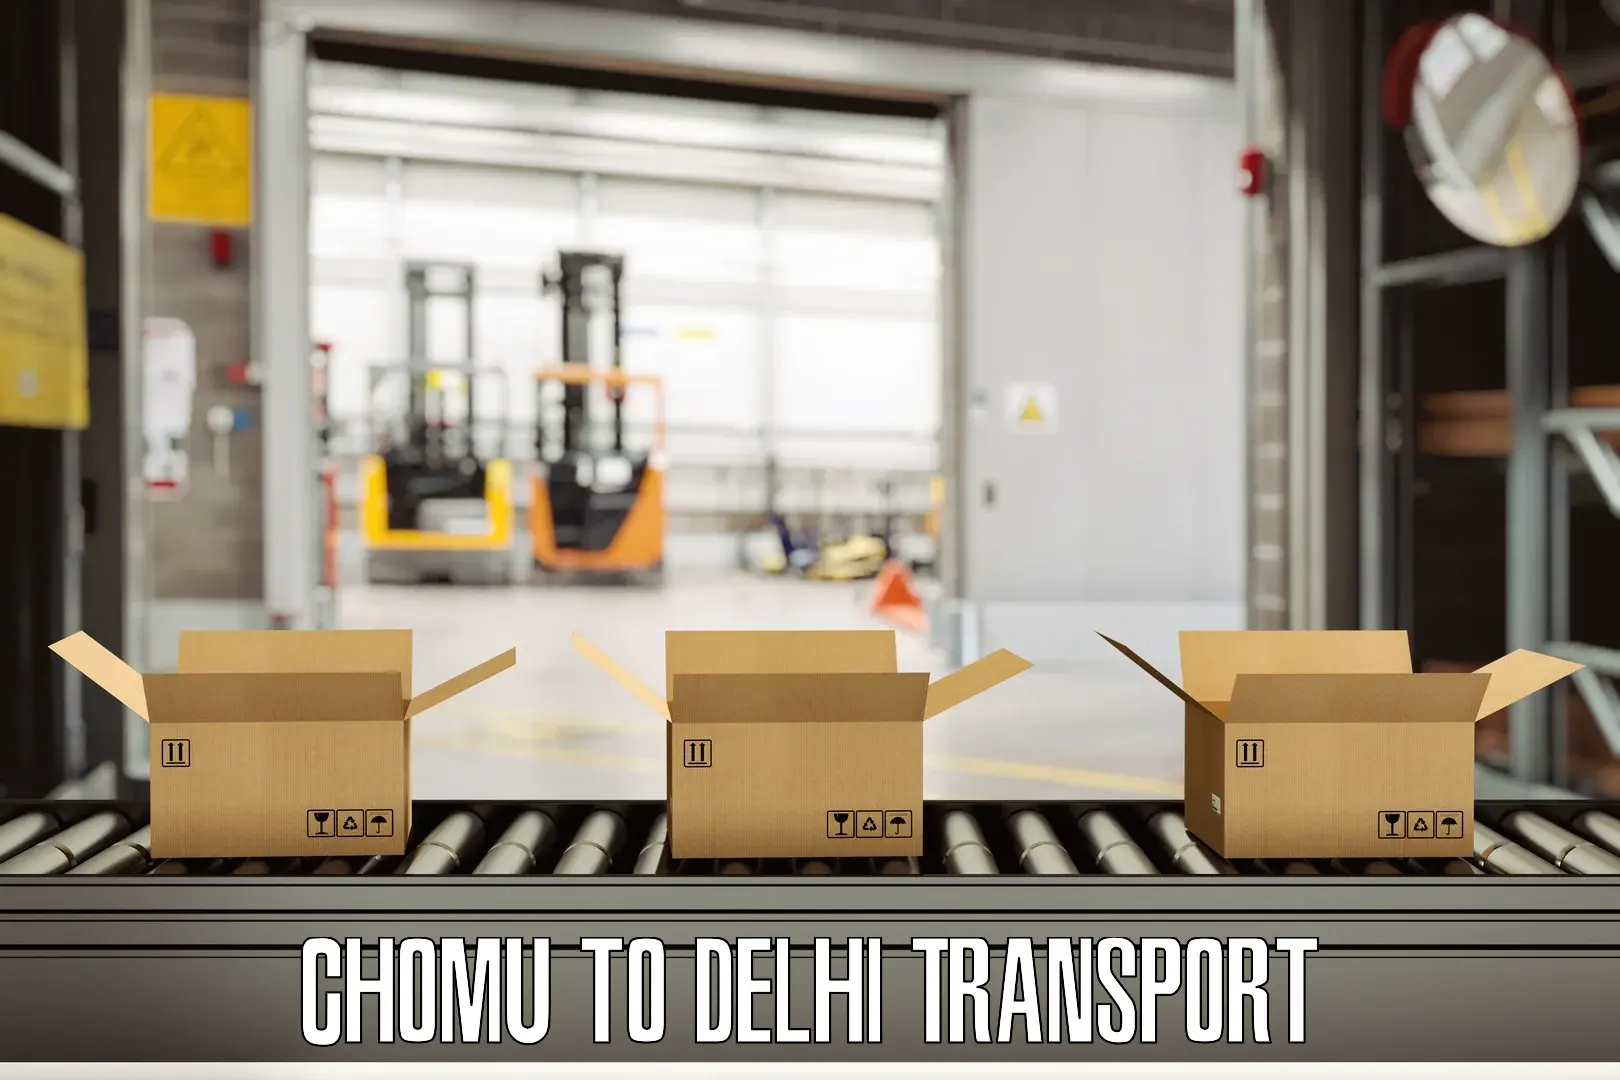 Furniture transport service Chomu to Delhi